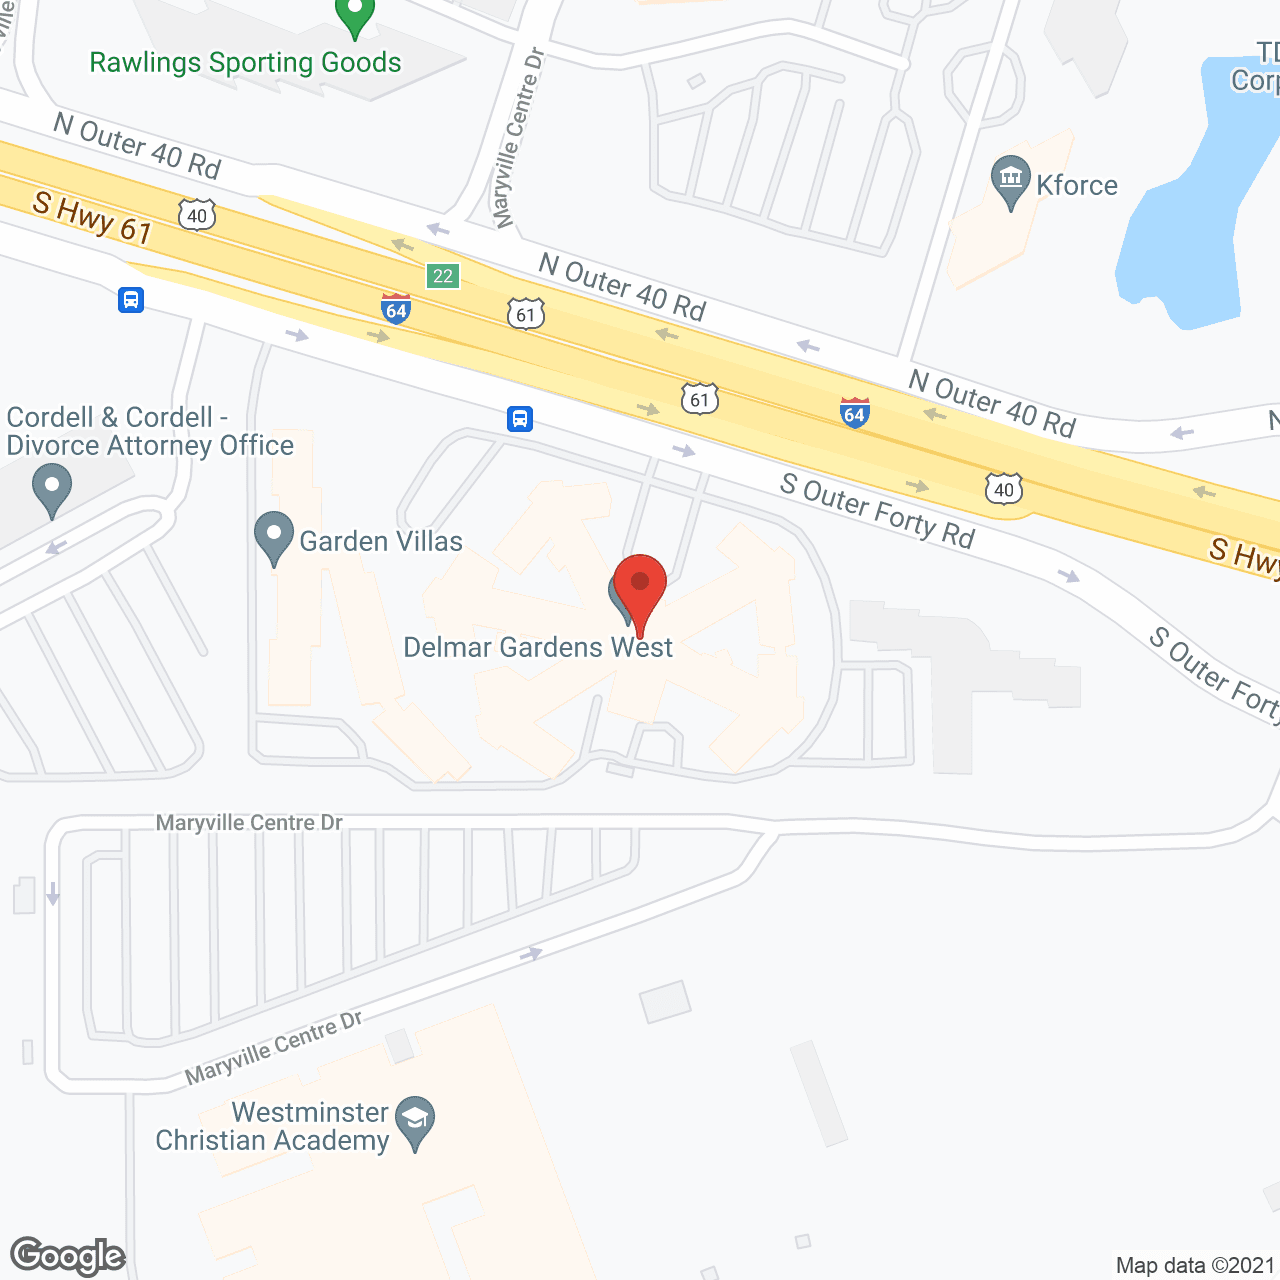 Delmar Gardens West in google map